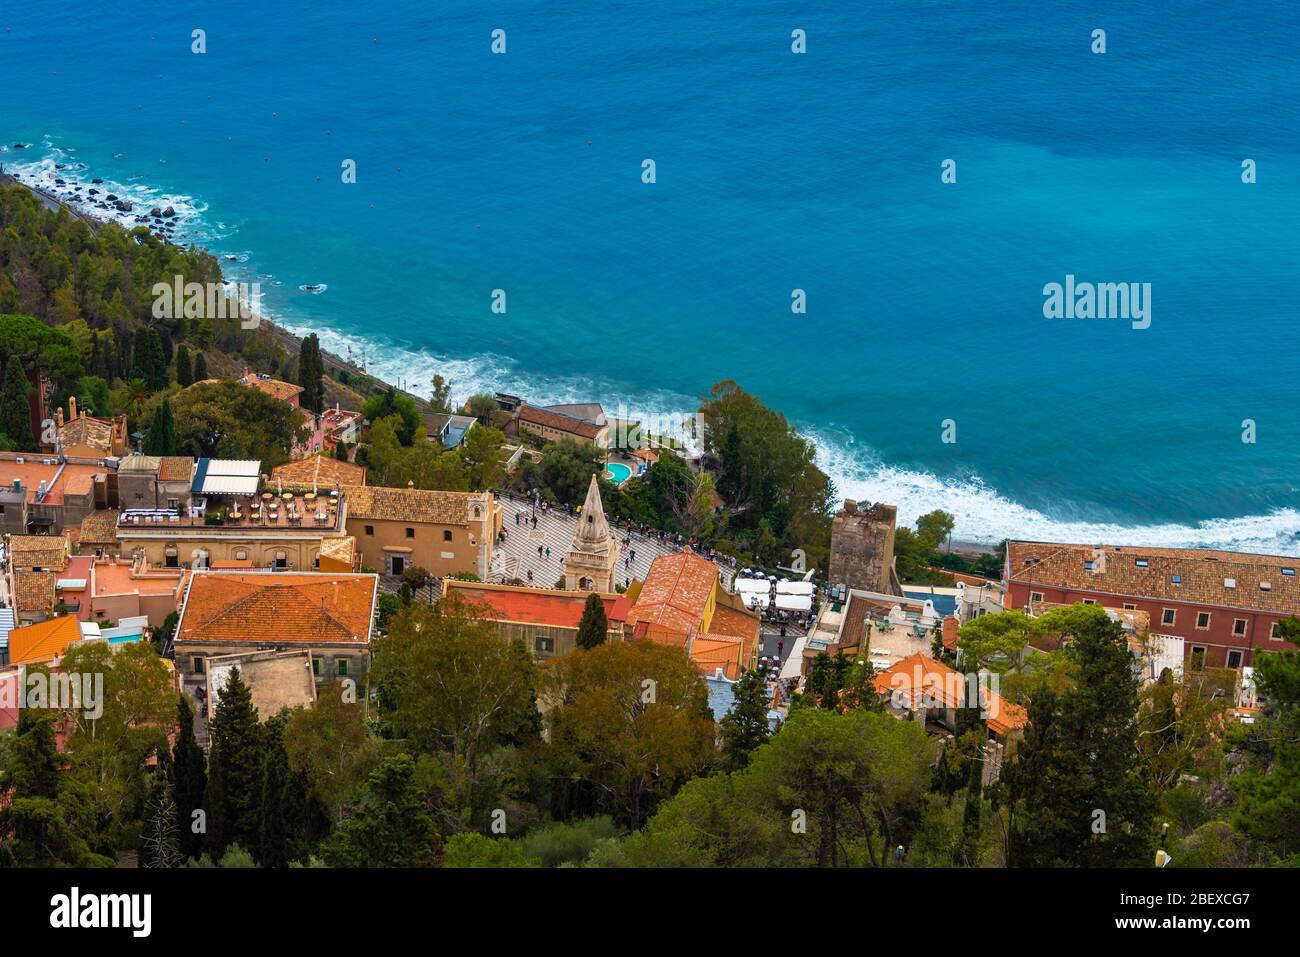 Vue panoramique incroyable sur la ville historique de Taormine sur la côte méditerranéenne, dans la province de Messine, Sicile Banque D'Images